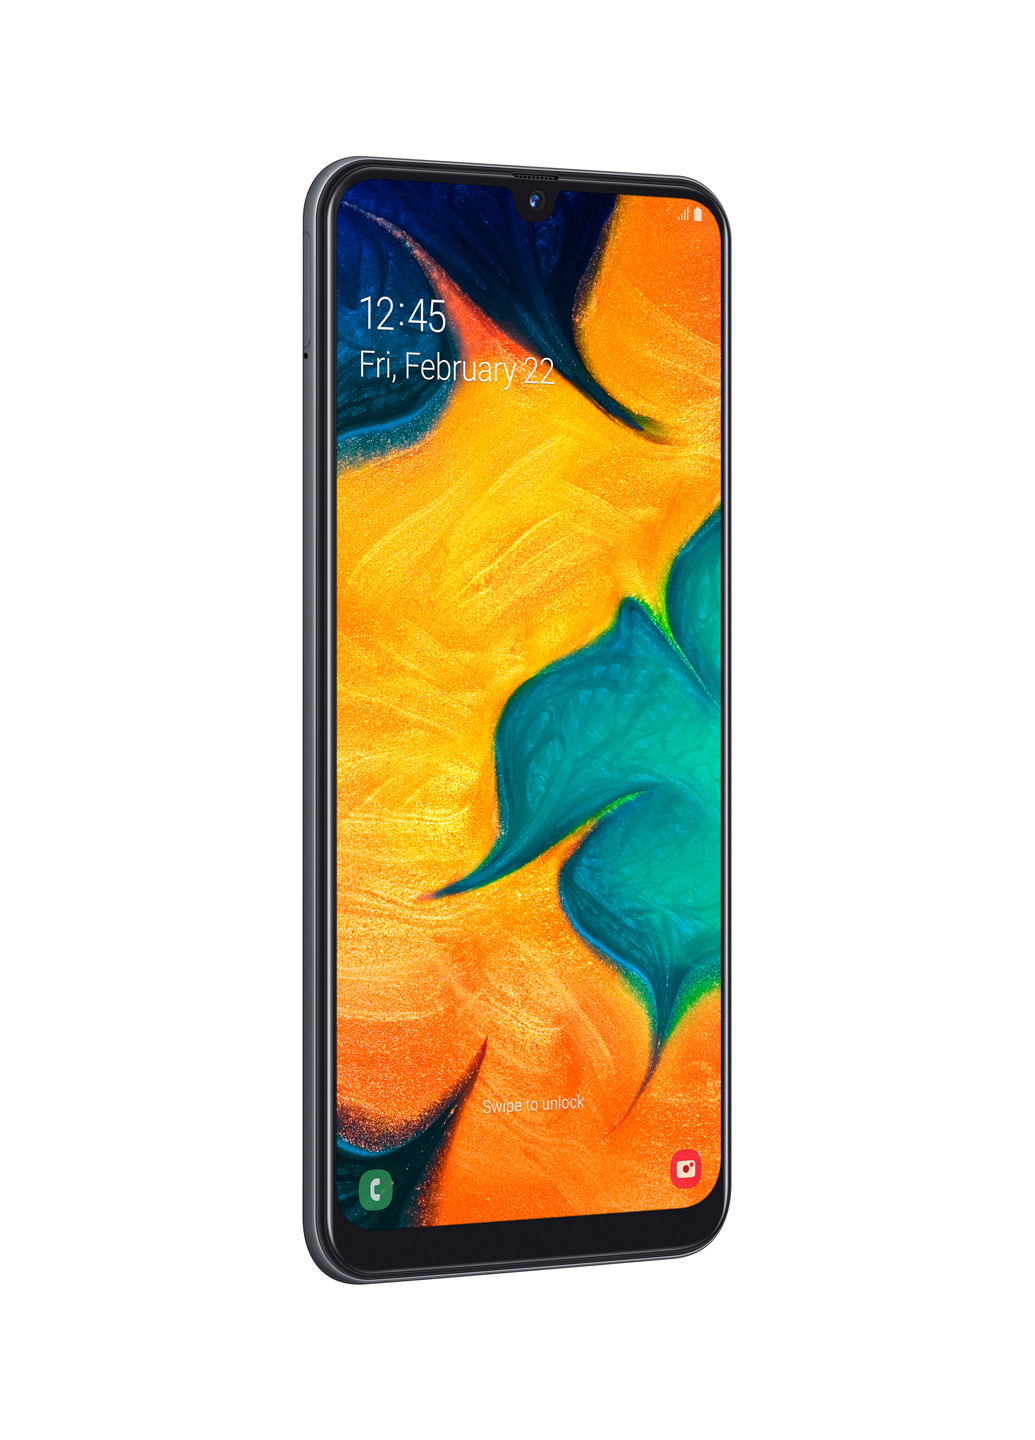 Смартфон Samsung galaxy a30 3/32gb black (sm-a305fzkusek) (131063863)